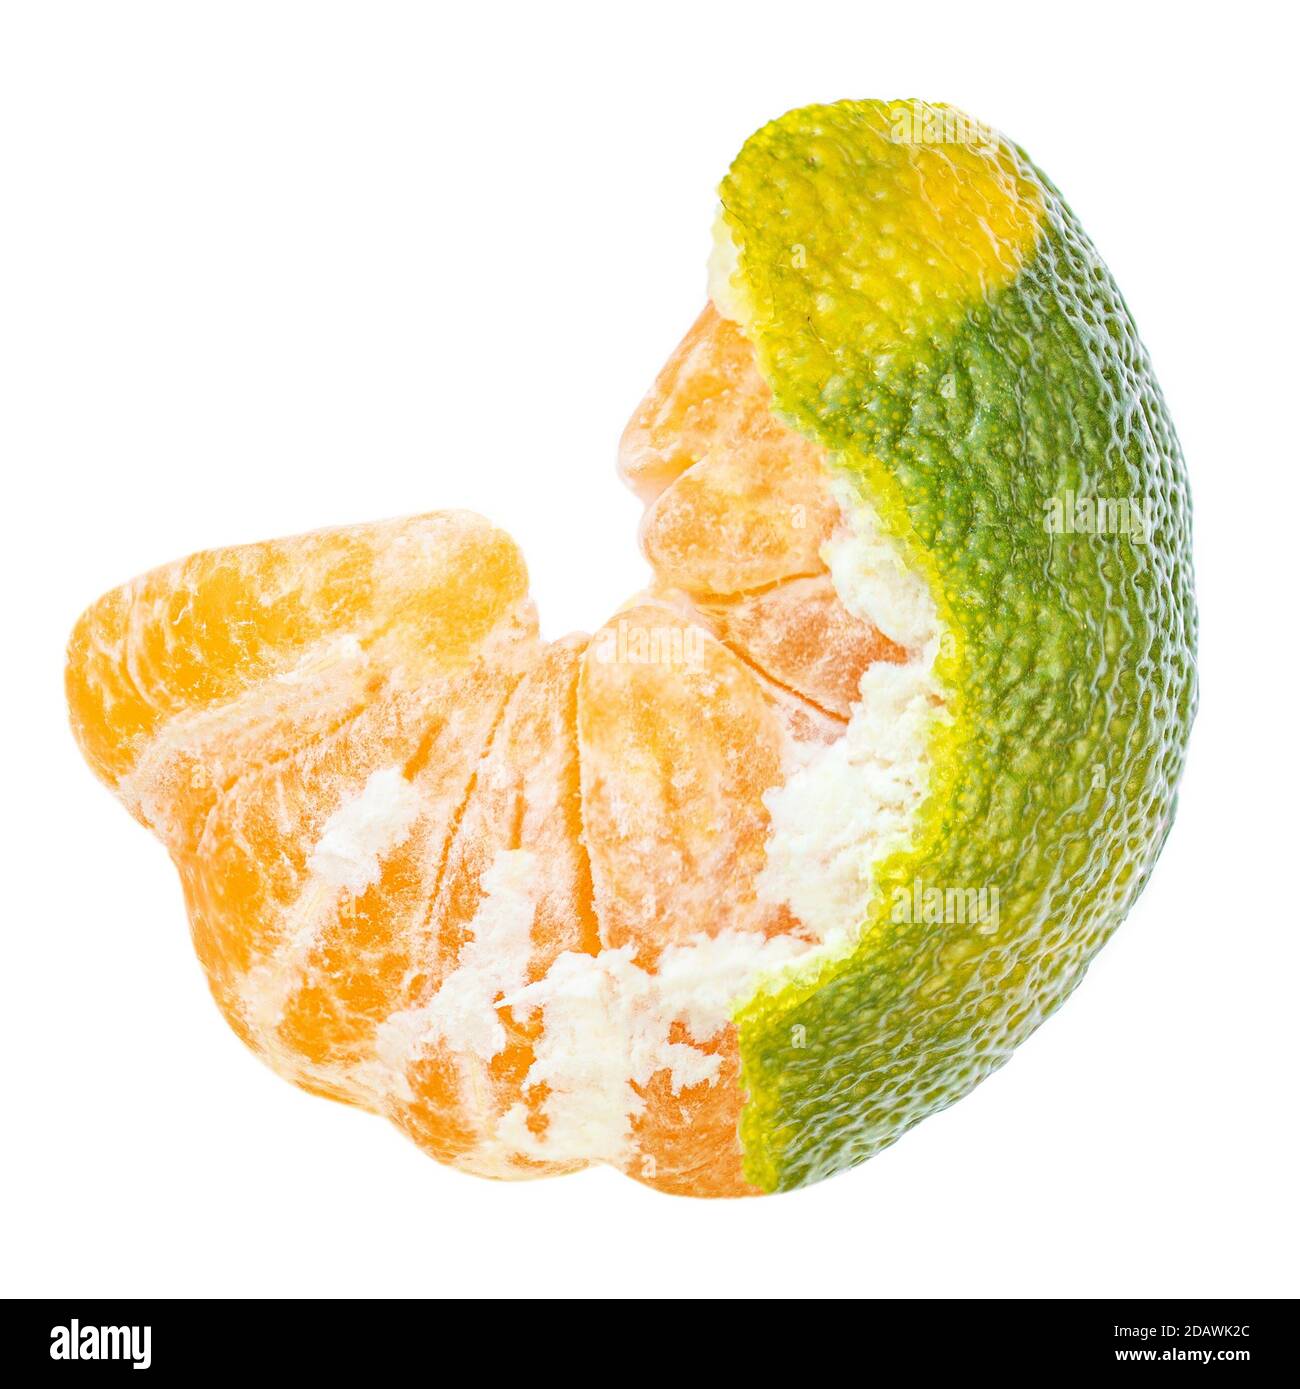 Peeled Tangerine, clementine, mandarines fruit isolated on white background. Macro Stock Photo